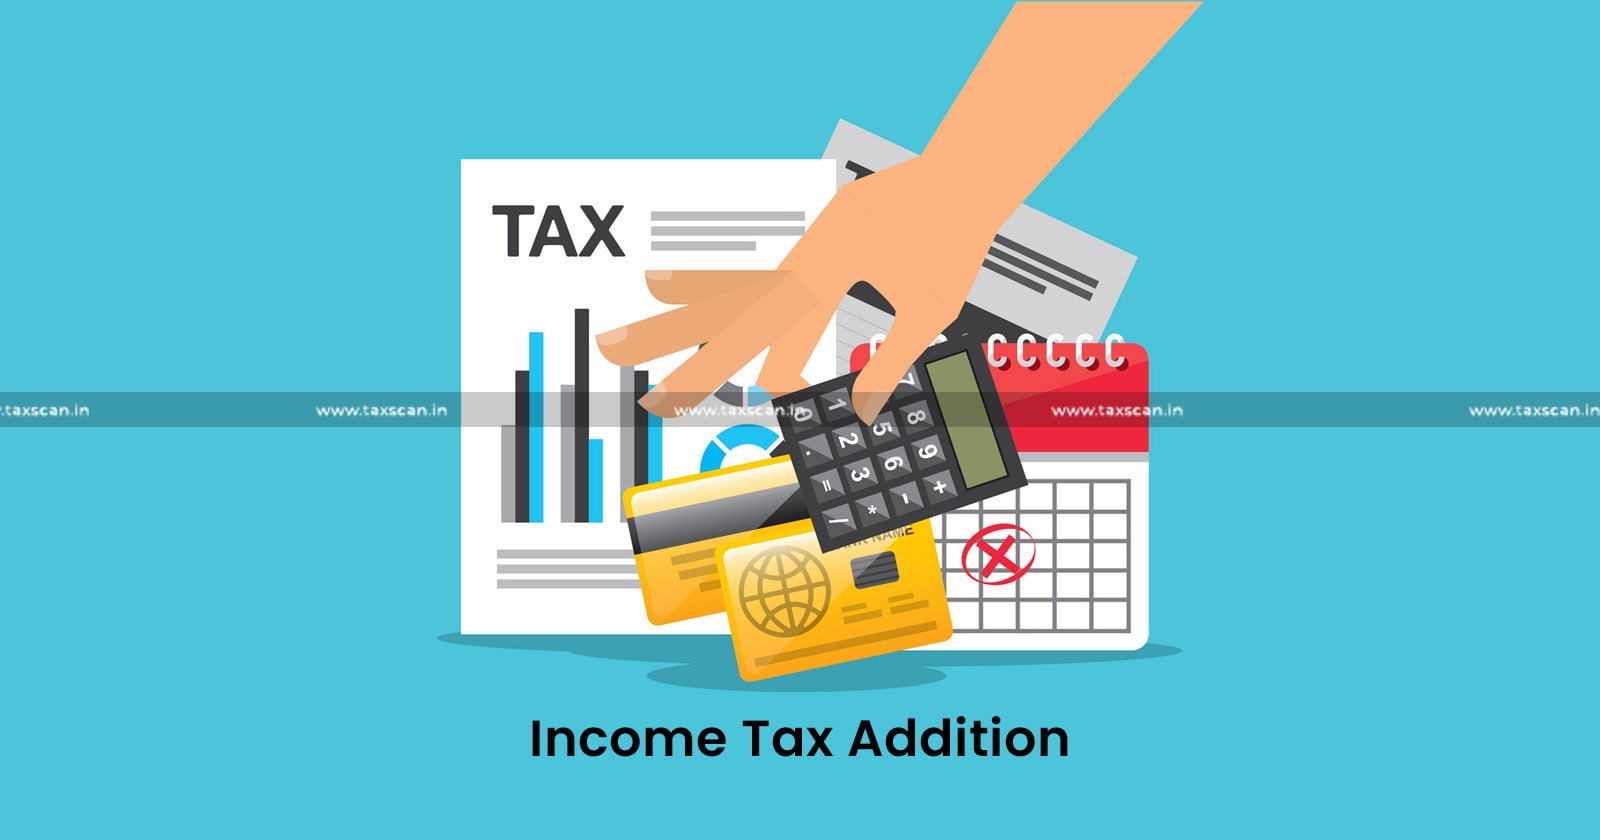 Assessing Officer - ITAT kolkata - tax updates - Income Tax - taxscan